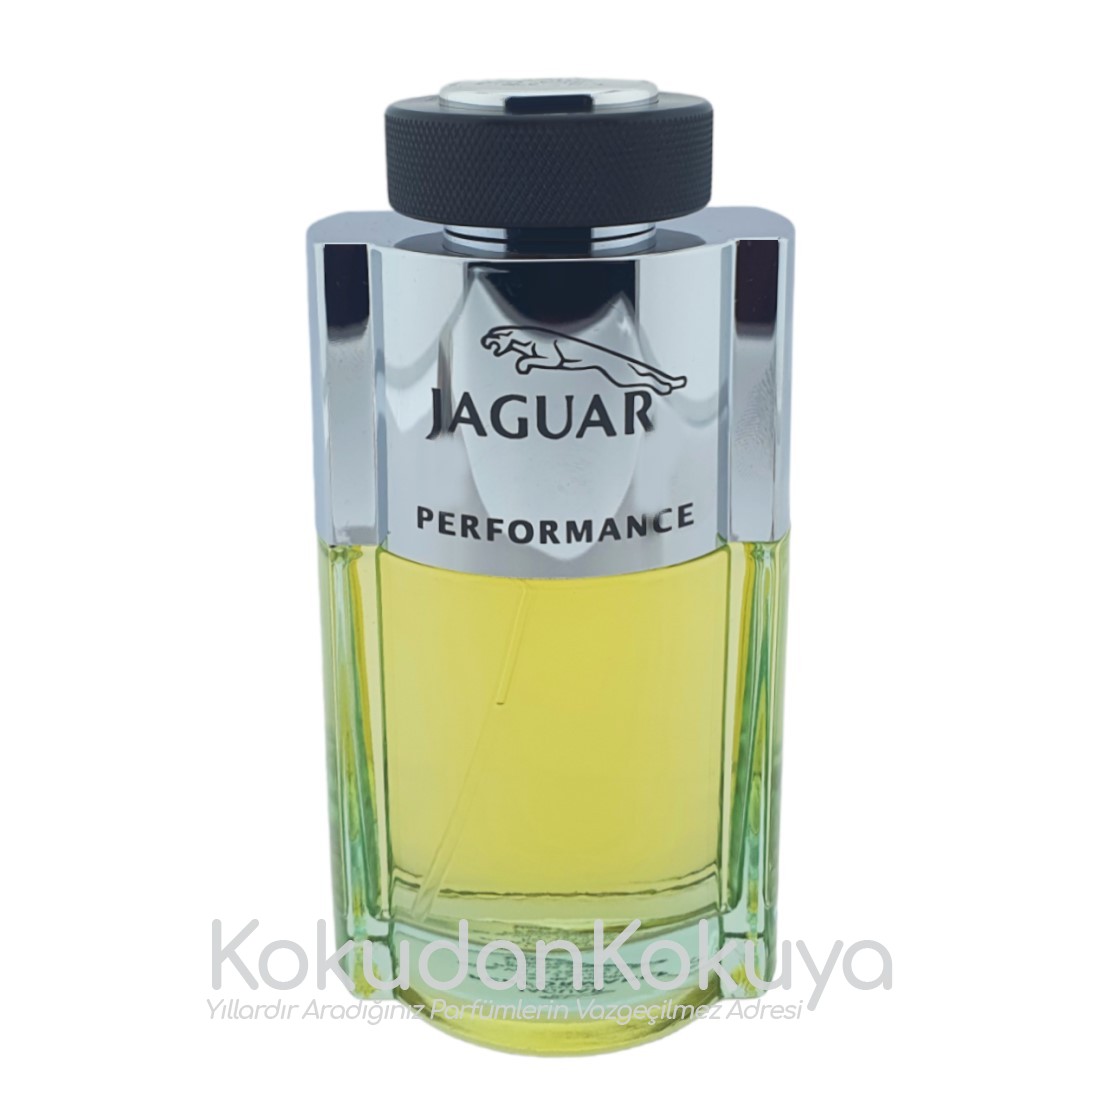 JAGUAR Performance (Vintage) Parfüm Erkek 75ml Eau De Toilette (EDT) Sprey 